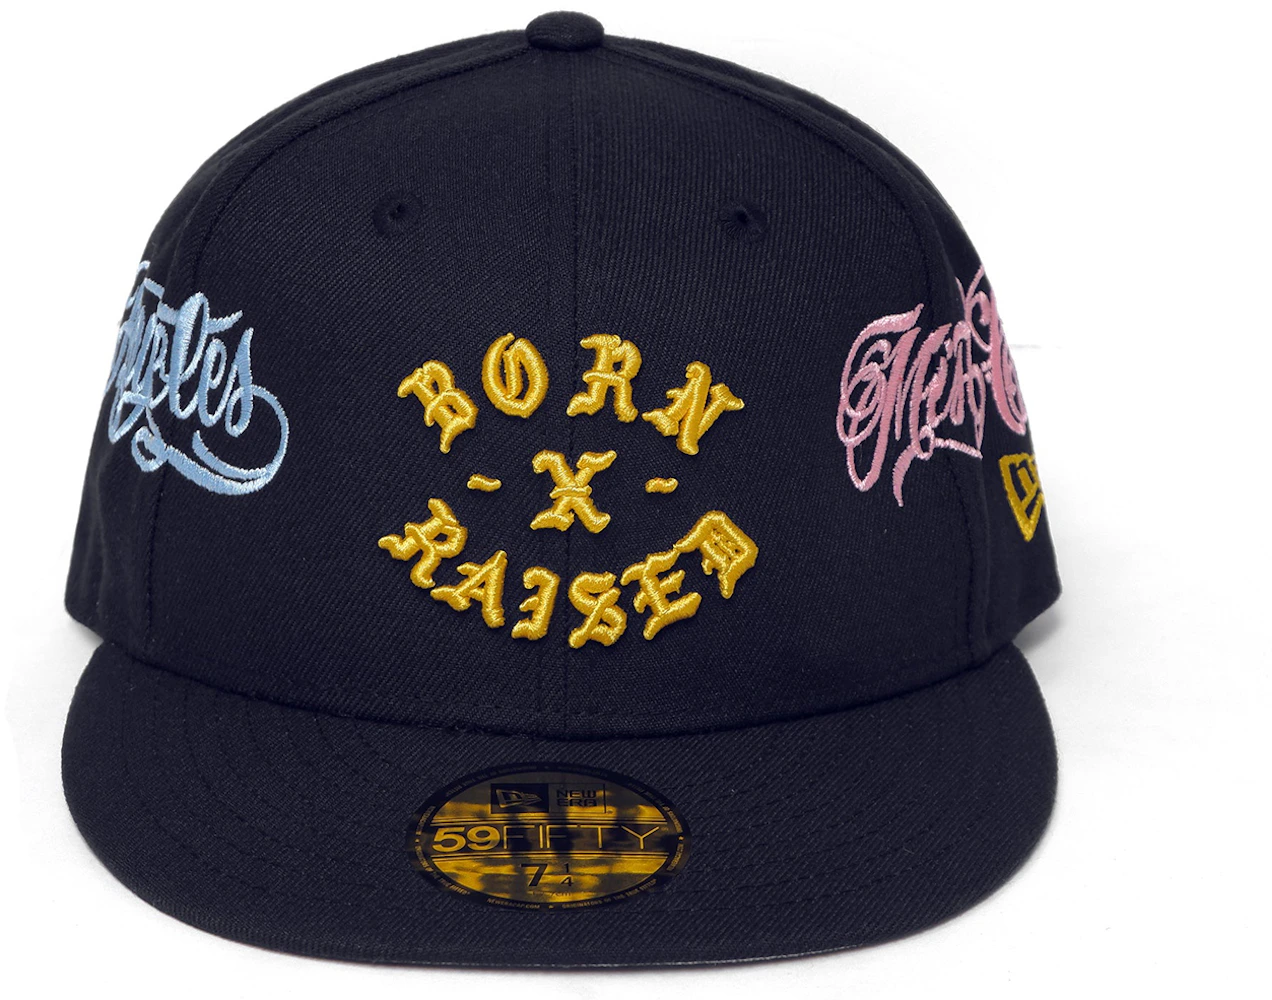 Born X Raised x Mister Cartoon x New Era Rocker 59Fifty Fitted Hat